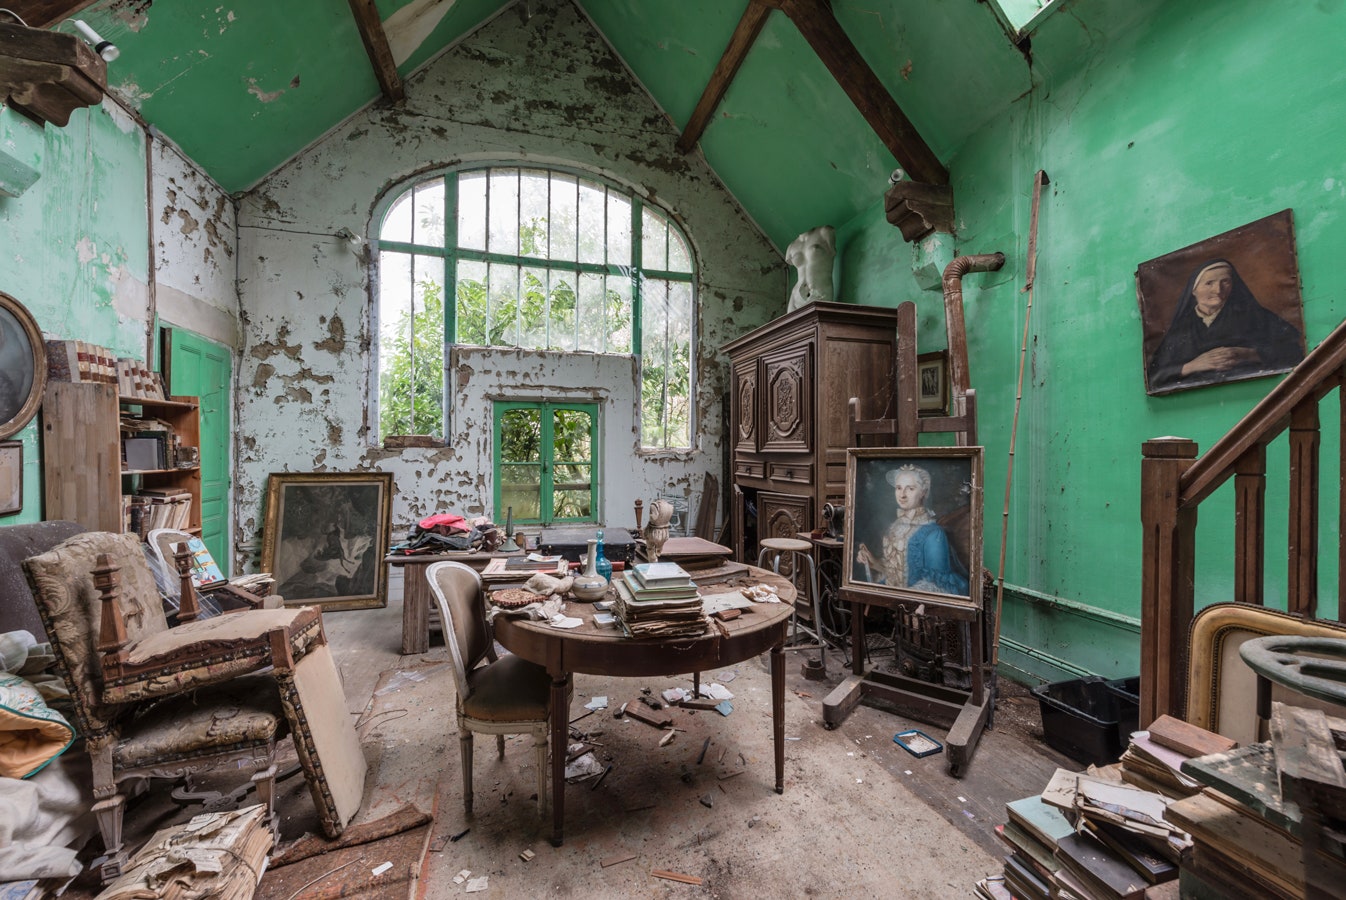 Мир без людей новая книга с фотографиями заброшенных мест от Ромена Вейона